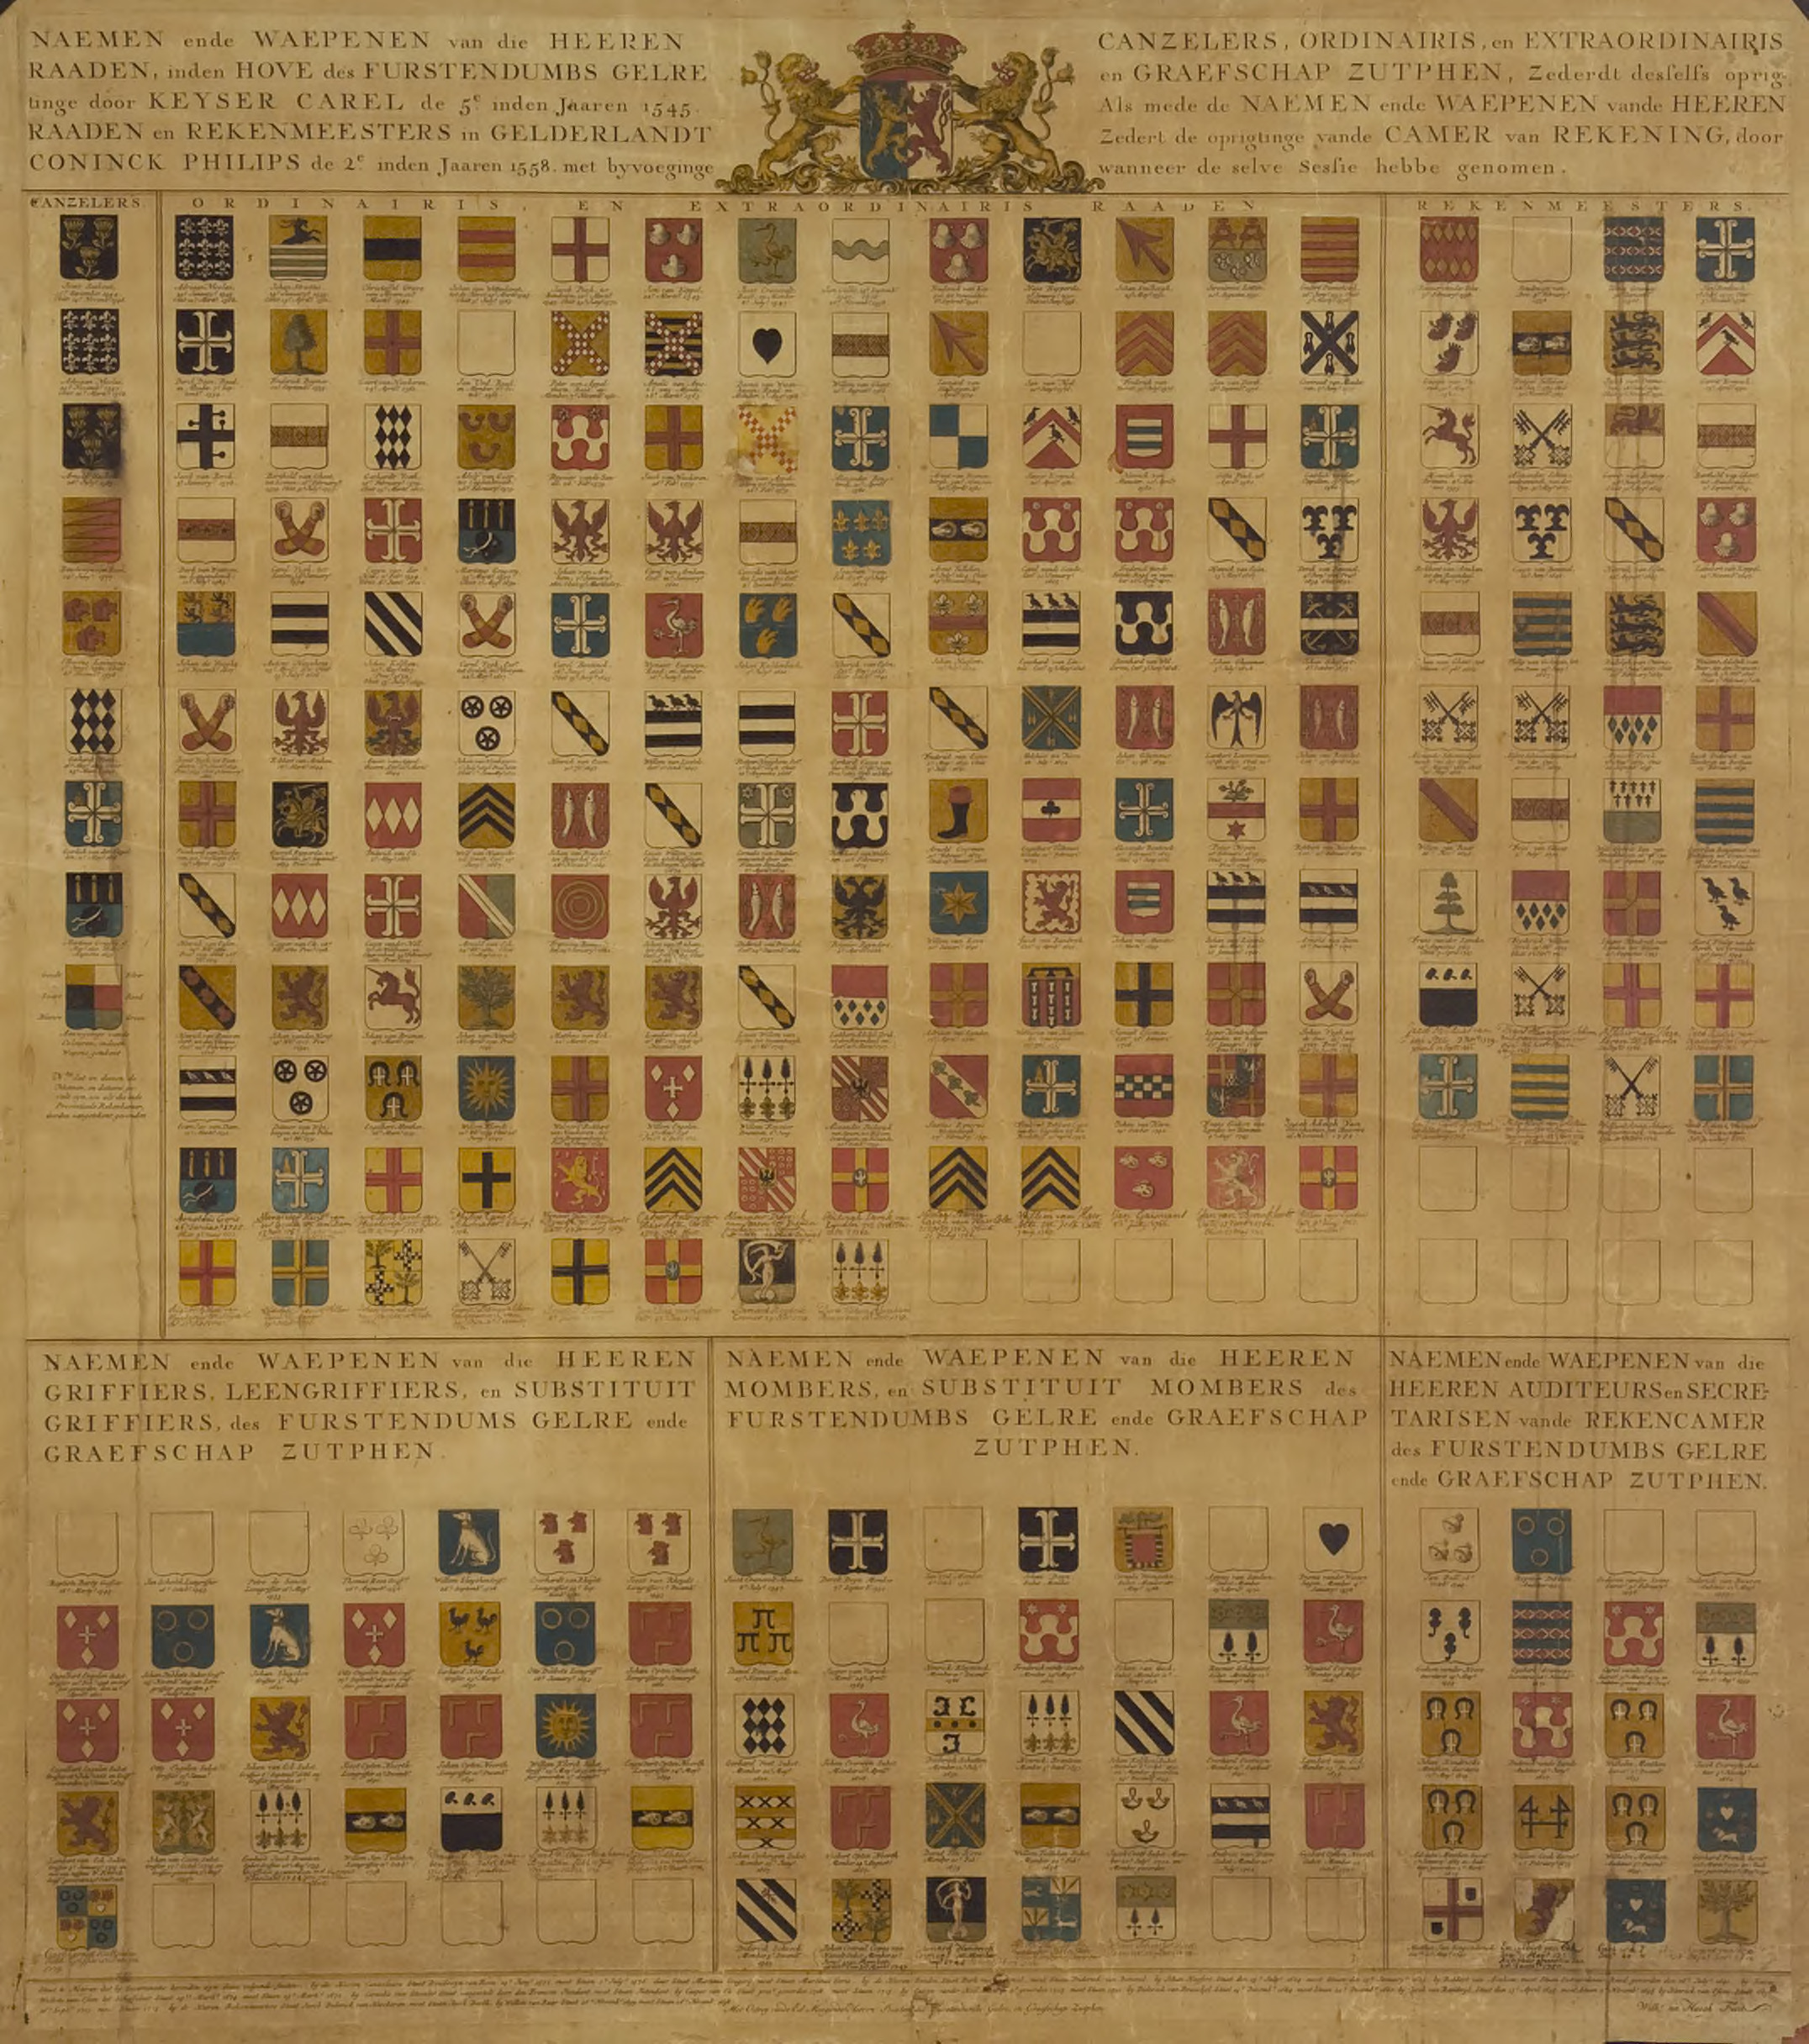 Namen en wapens van de kanseliers van het Hof van Gelre, 18e eeuw.